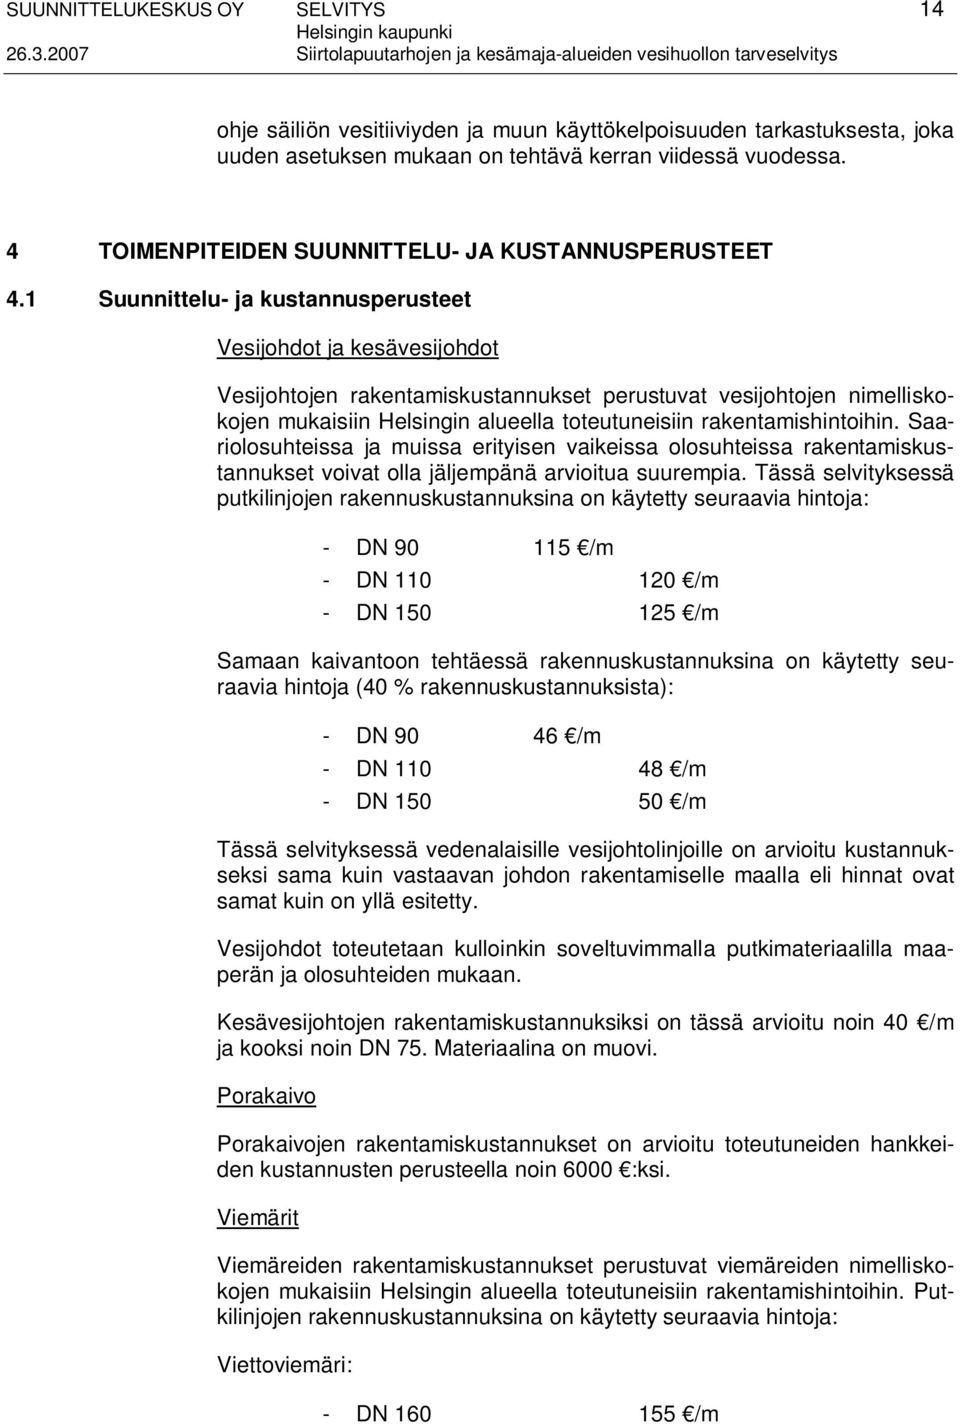 1 Suunnittelu- ja kustannusperusteet Vesijohdot ja kesävesijohdot Vesijohtojen rakentamiskustannukset perustuvat vesijohtojen nimelliskokojen mukaisiin Helsingin alueella toteutuneisiin